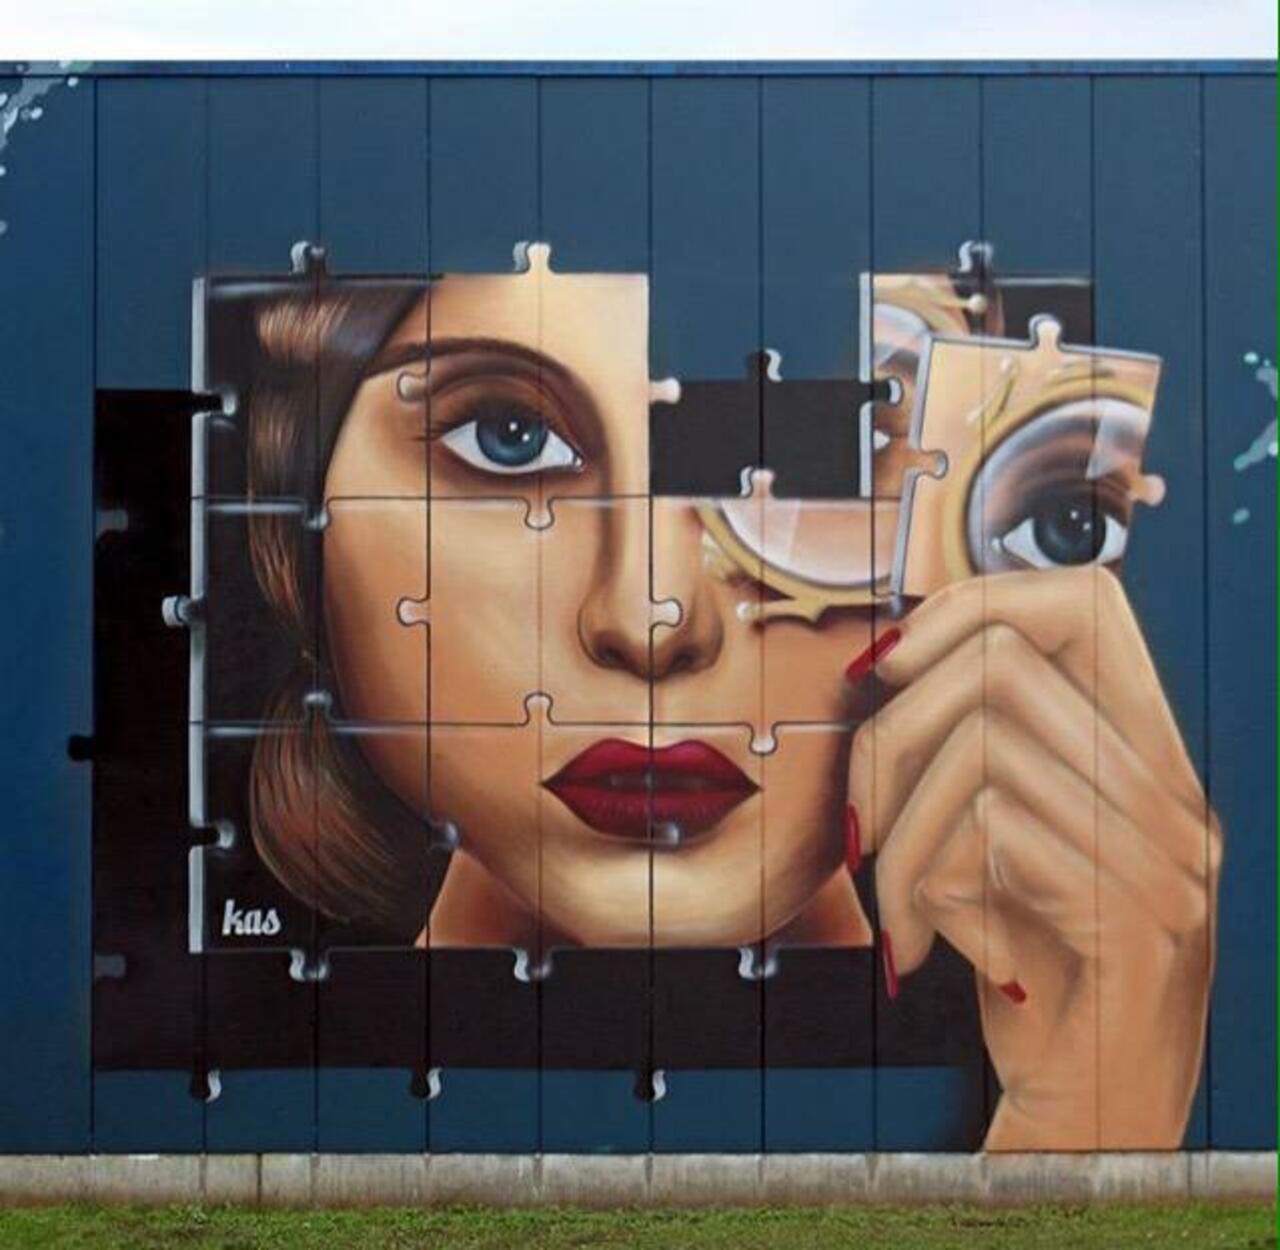 Kas Art's new Street Art "Piece of me" in Aalst Belgium 

#art #graffiti #mural #streetart http://t.co/9gWC0JnHoz